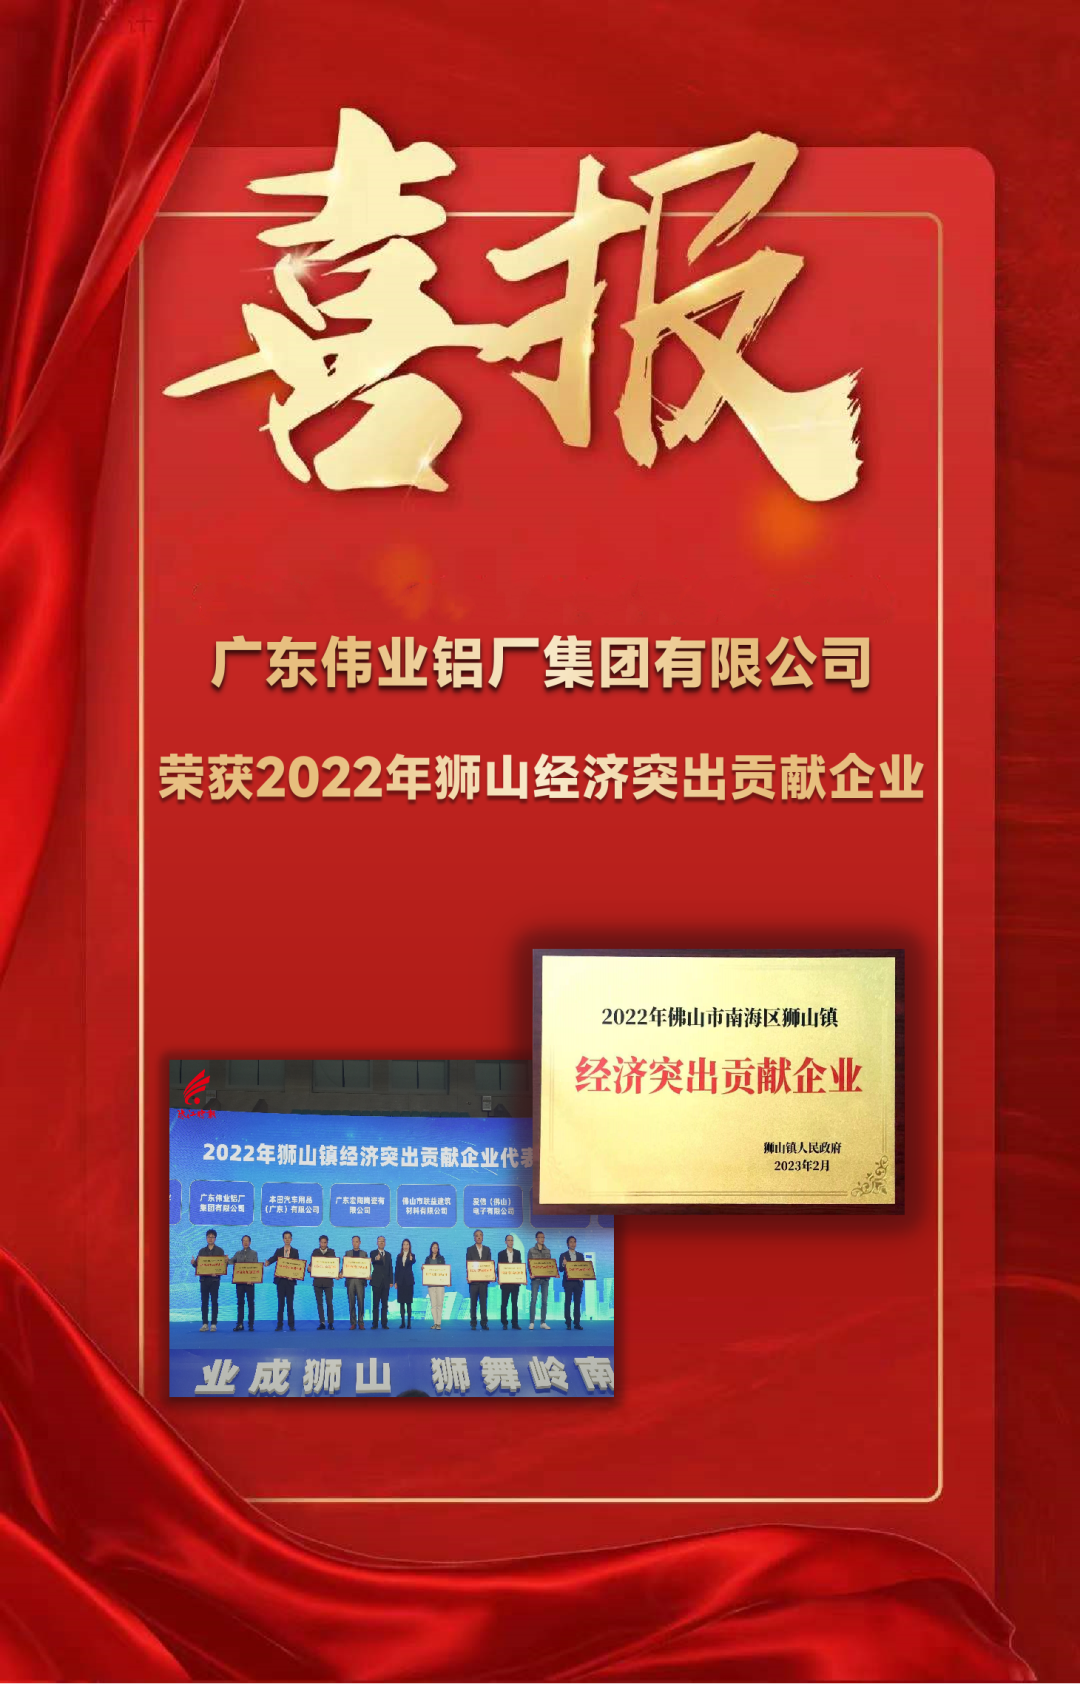 广东伟业集团获“狮山镇经济突出贡献”表彰